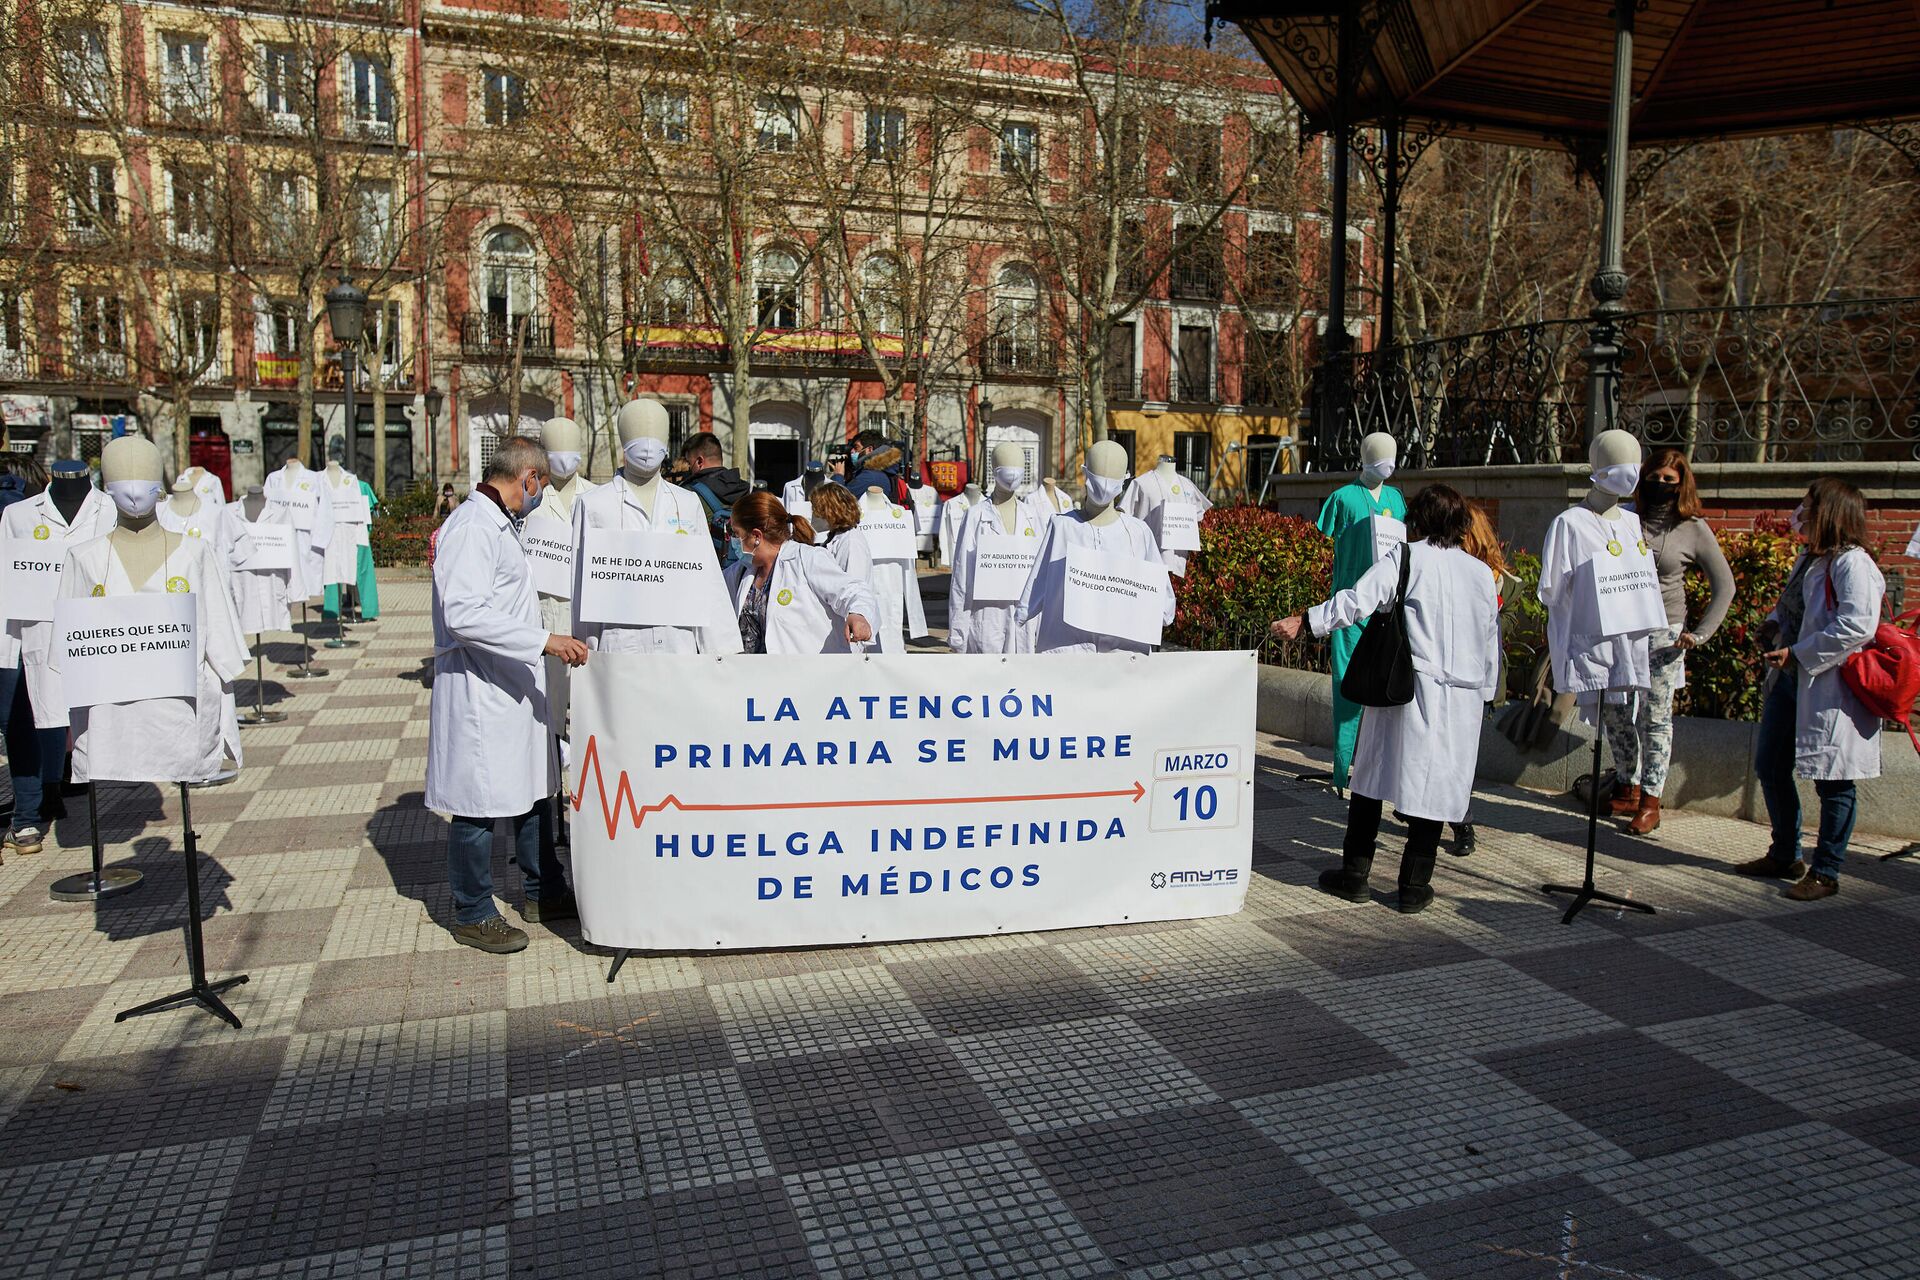 Protesta de profesionales sanitarios durante el inicio de la huelga indefinida en Madrid - Sputnik Mundo, 1920, 10.03.2021